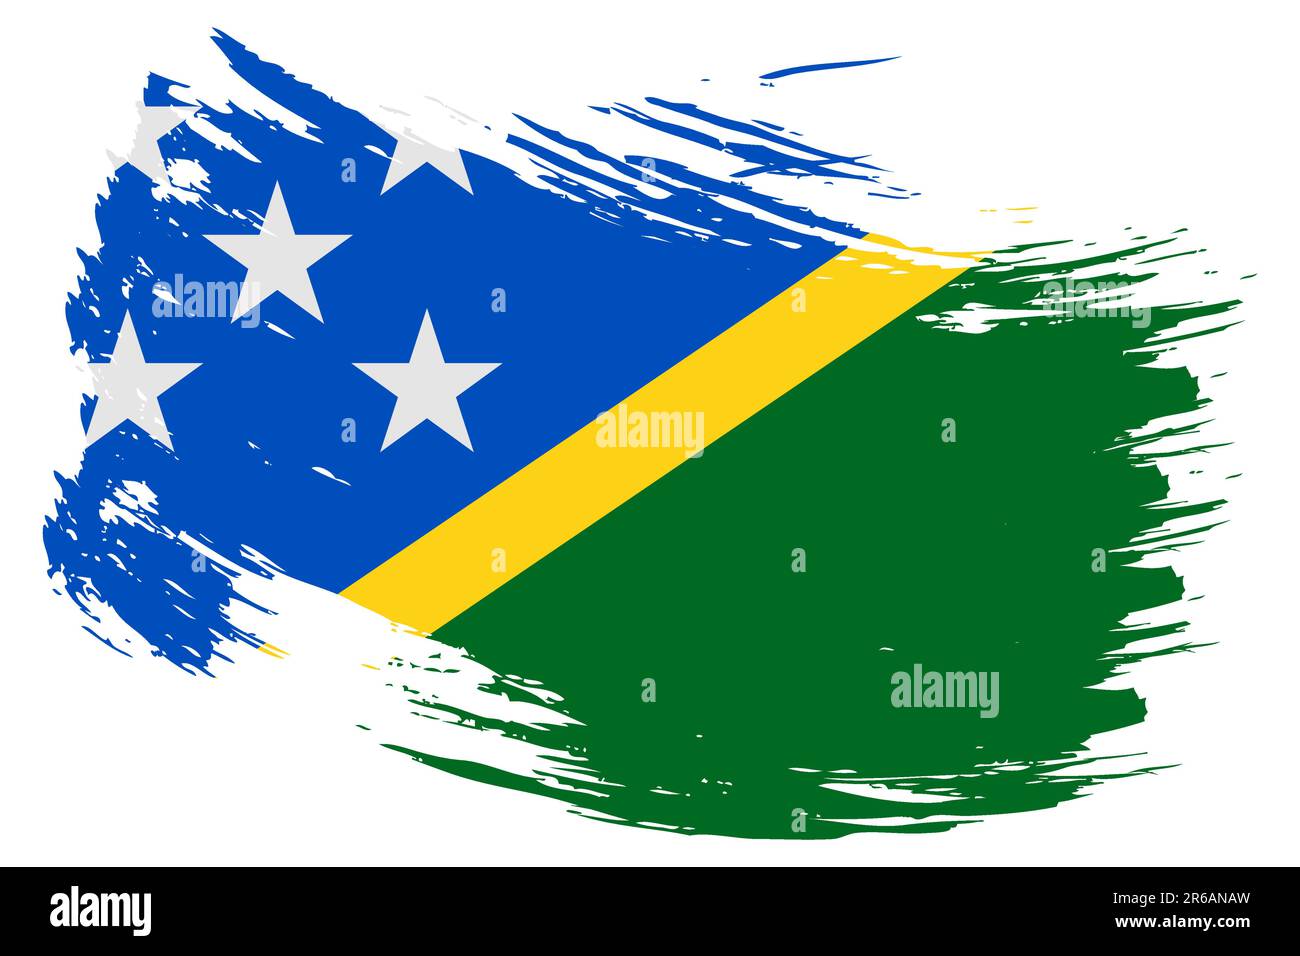 Salomonen-Pinselstrich Flaggen-Vektorhintergrund. Handgezeichnetes isoliertes Banner im Grunge-Stil mit Melanesien-Anstrich. Stock Vektor